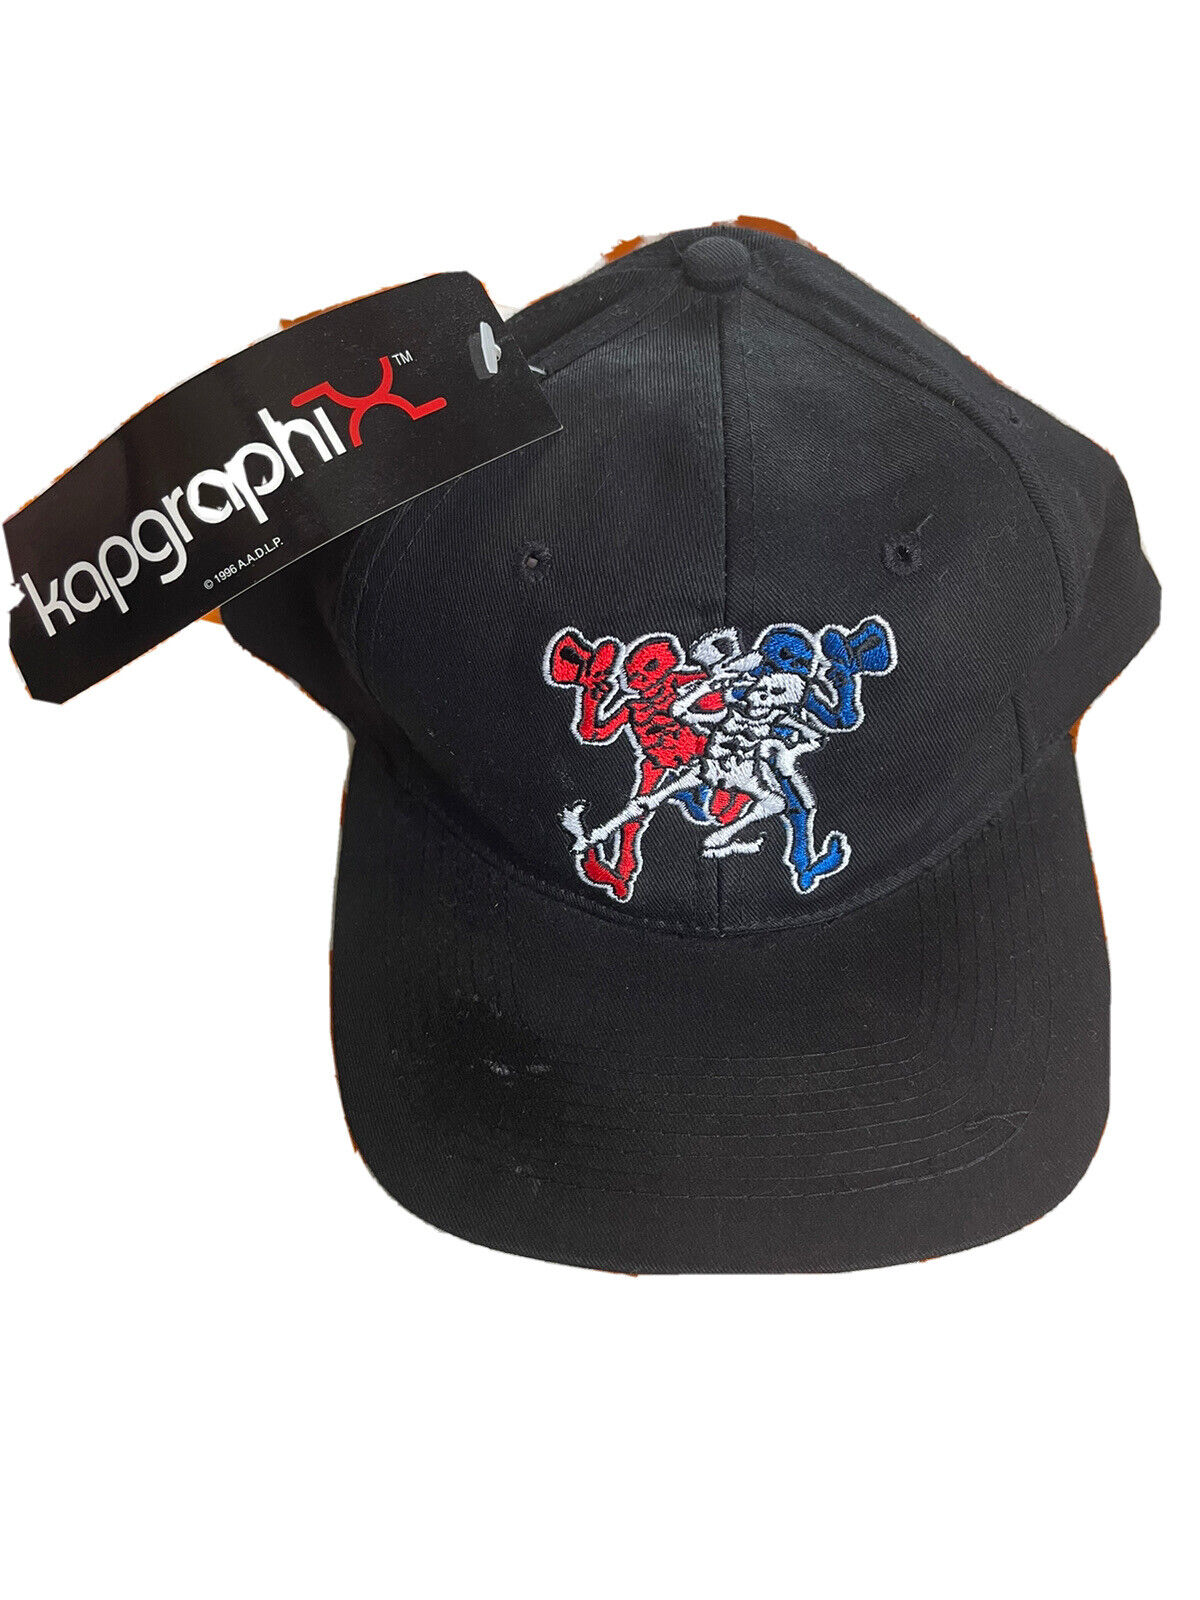 VINTAGE 90s Original Kapgraphi 1996 A.A.D.L.P. Brand Grateful Dead Skull Hat